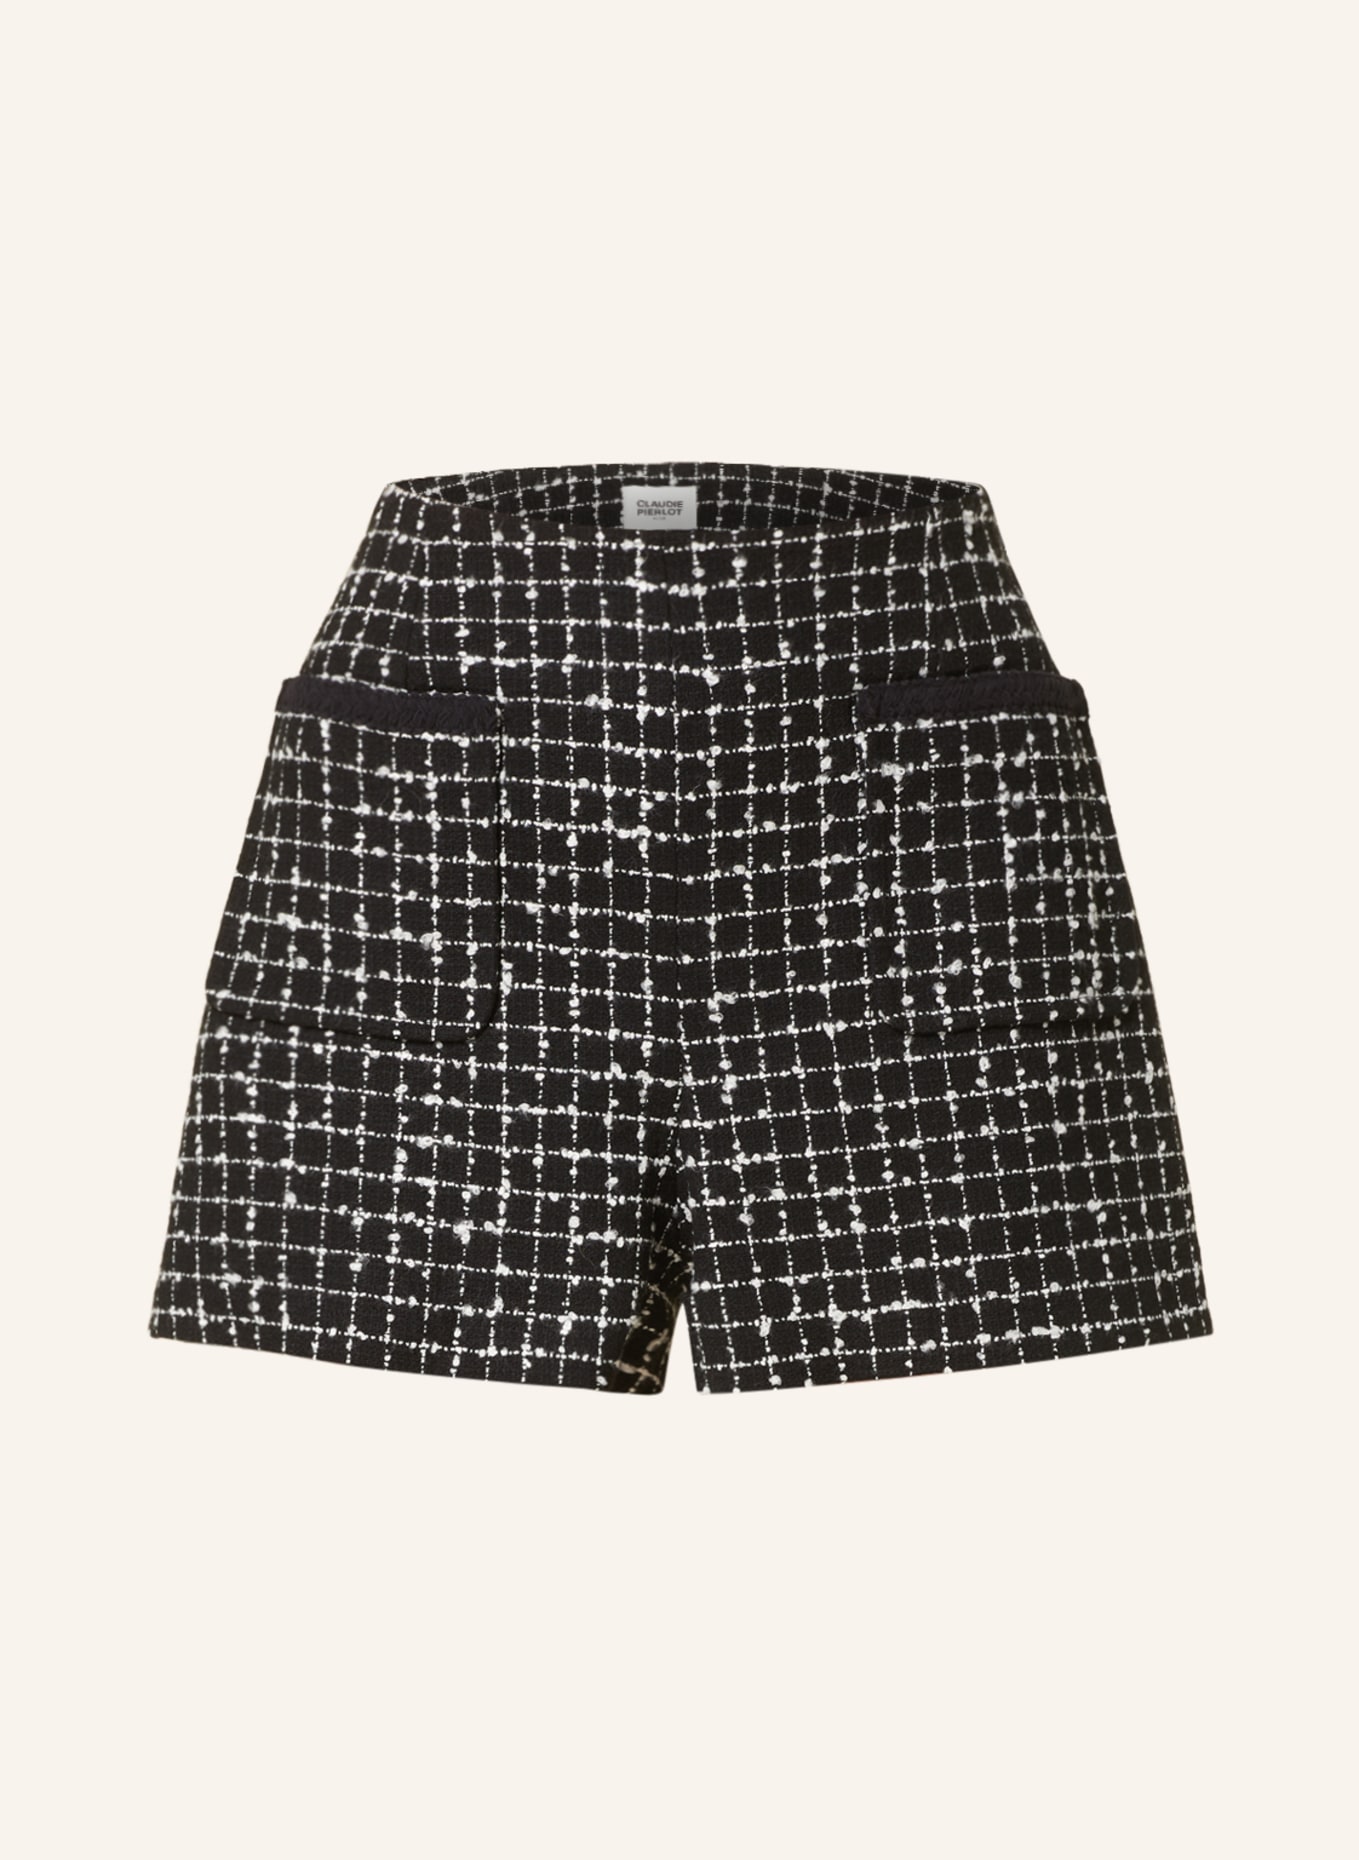 CLAUDIE PIERLOT Tweed-Shorts, Farbe: SCHWARZ/ WEISS (Bild 1)